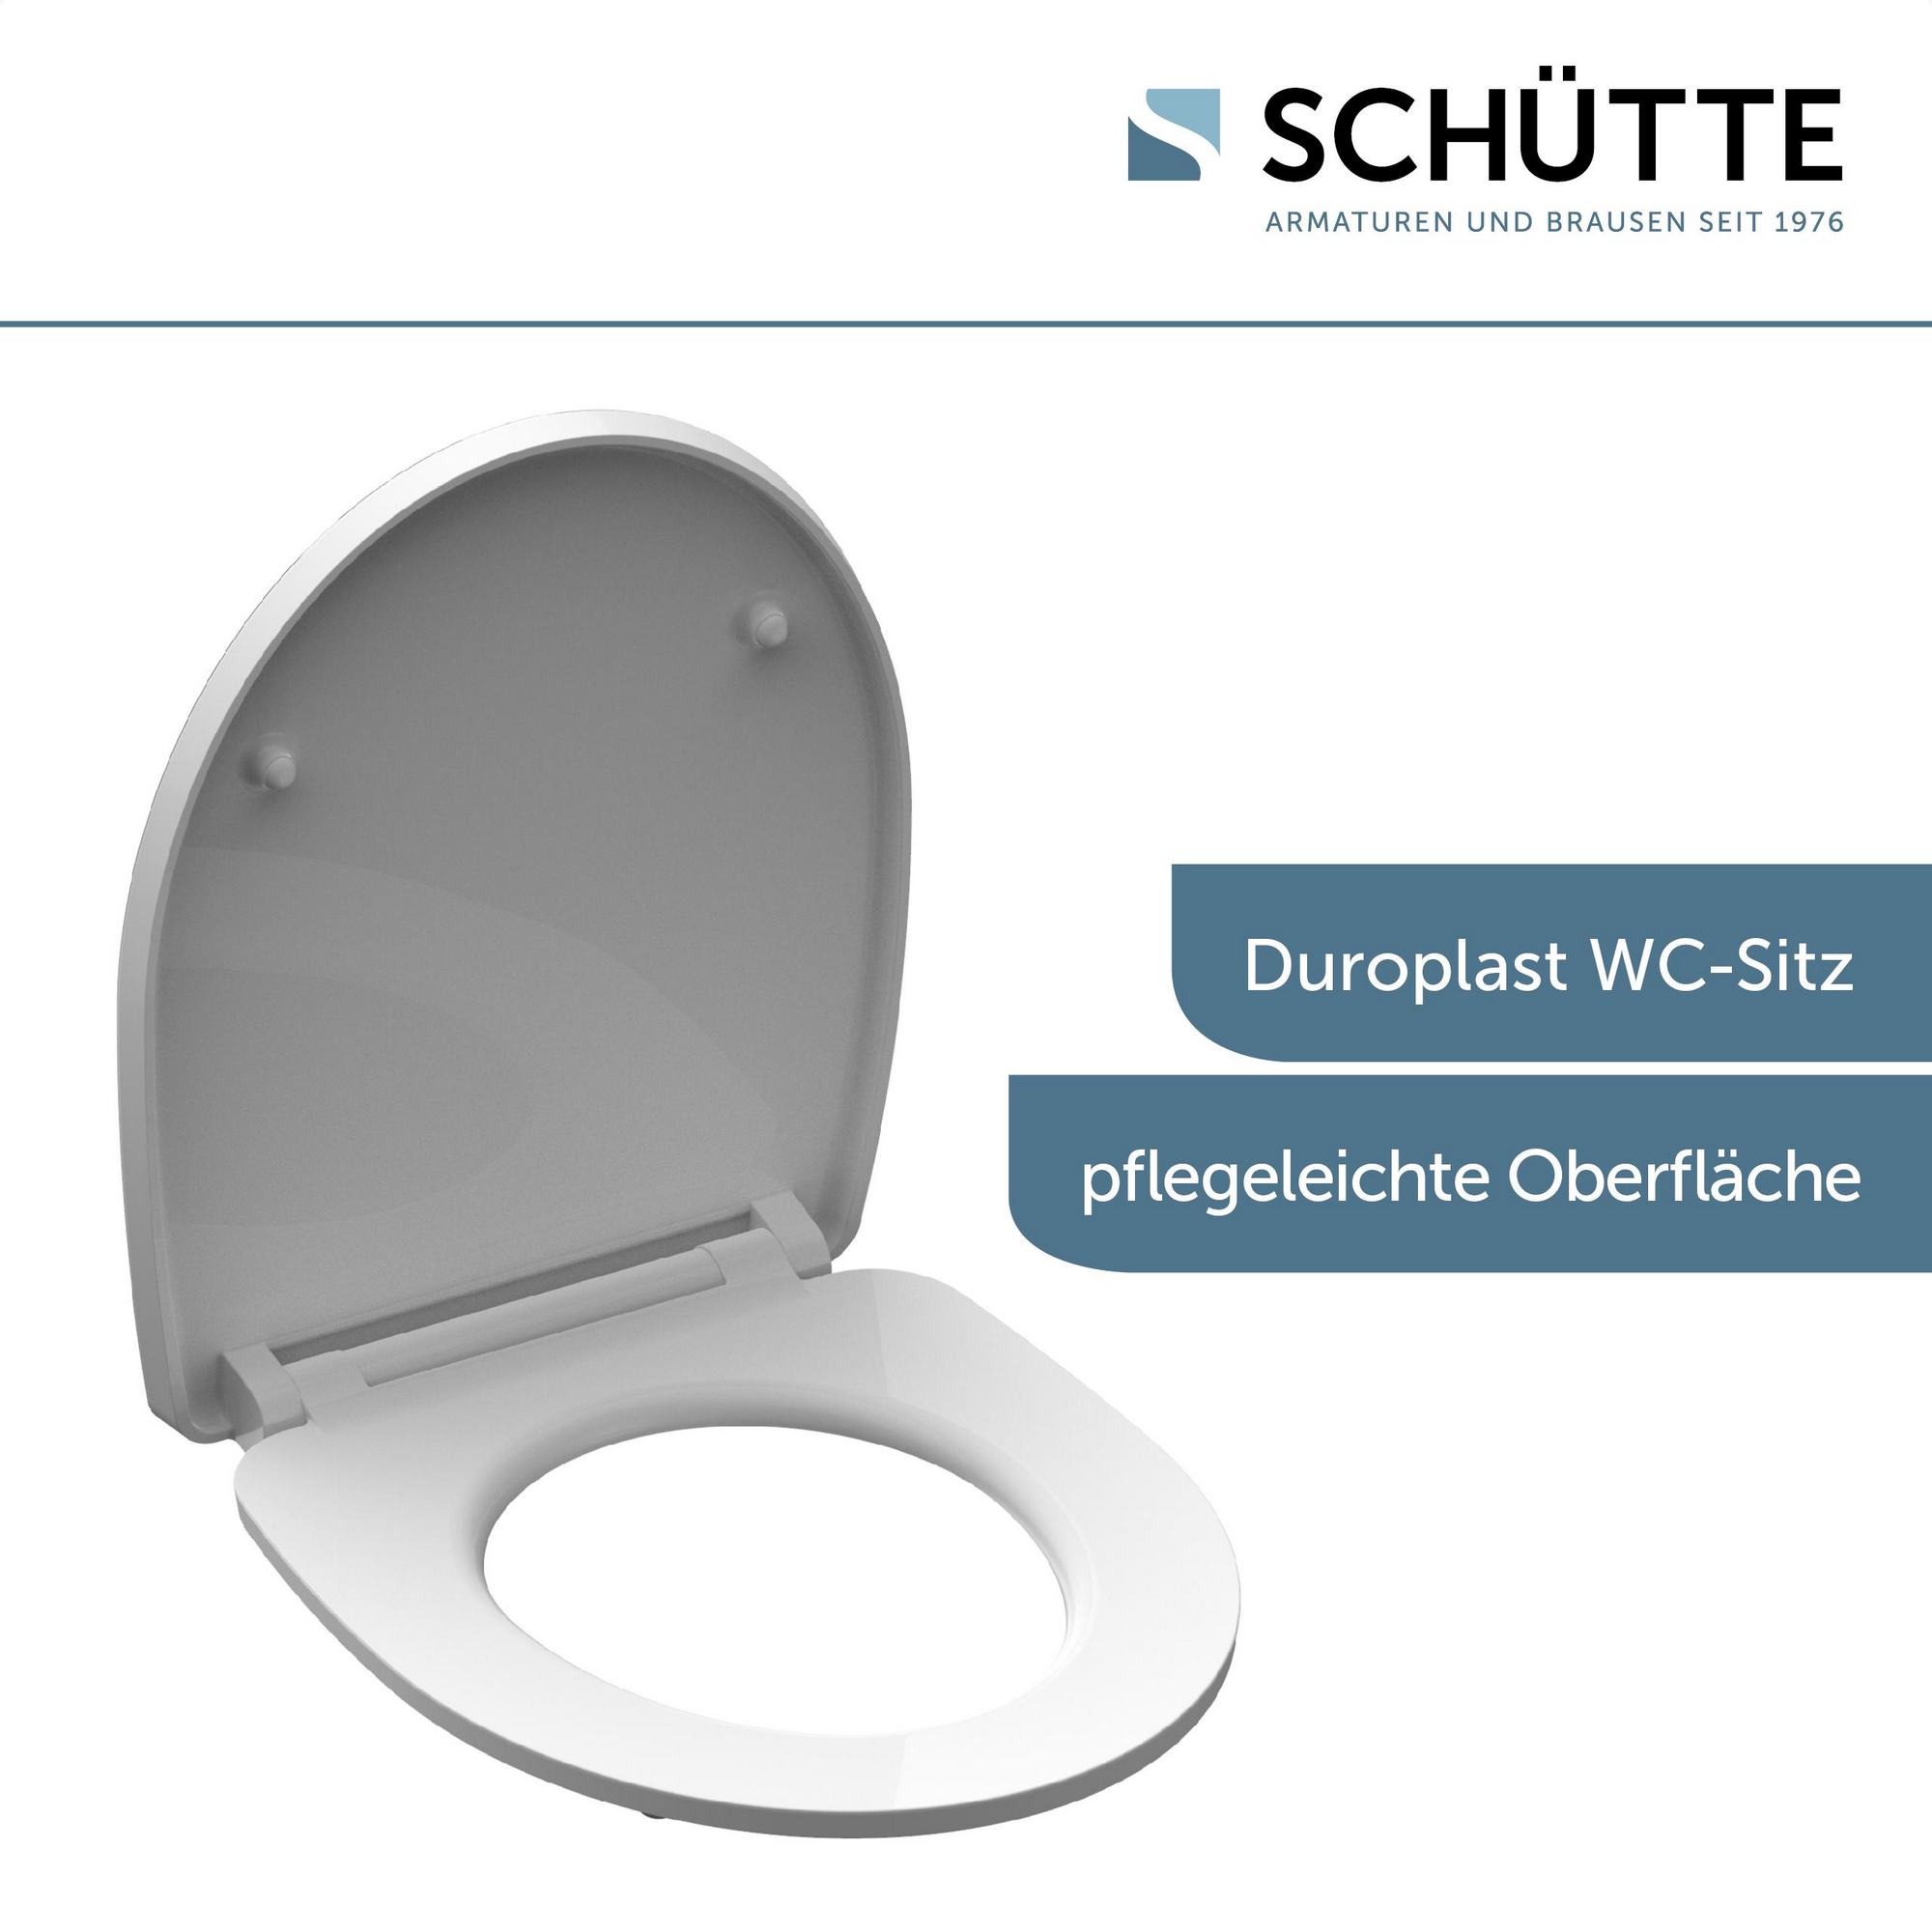 WC-Sitz 'Raindrop HG' mit Absenkautomatik grau/grün 37,5 x 45 cm + product picture